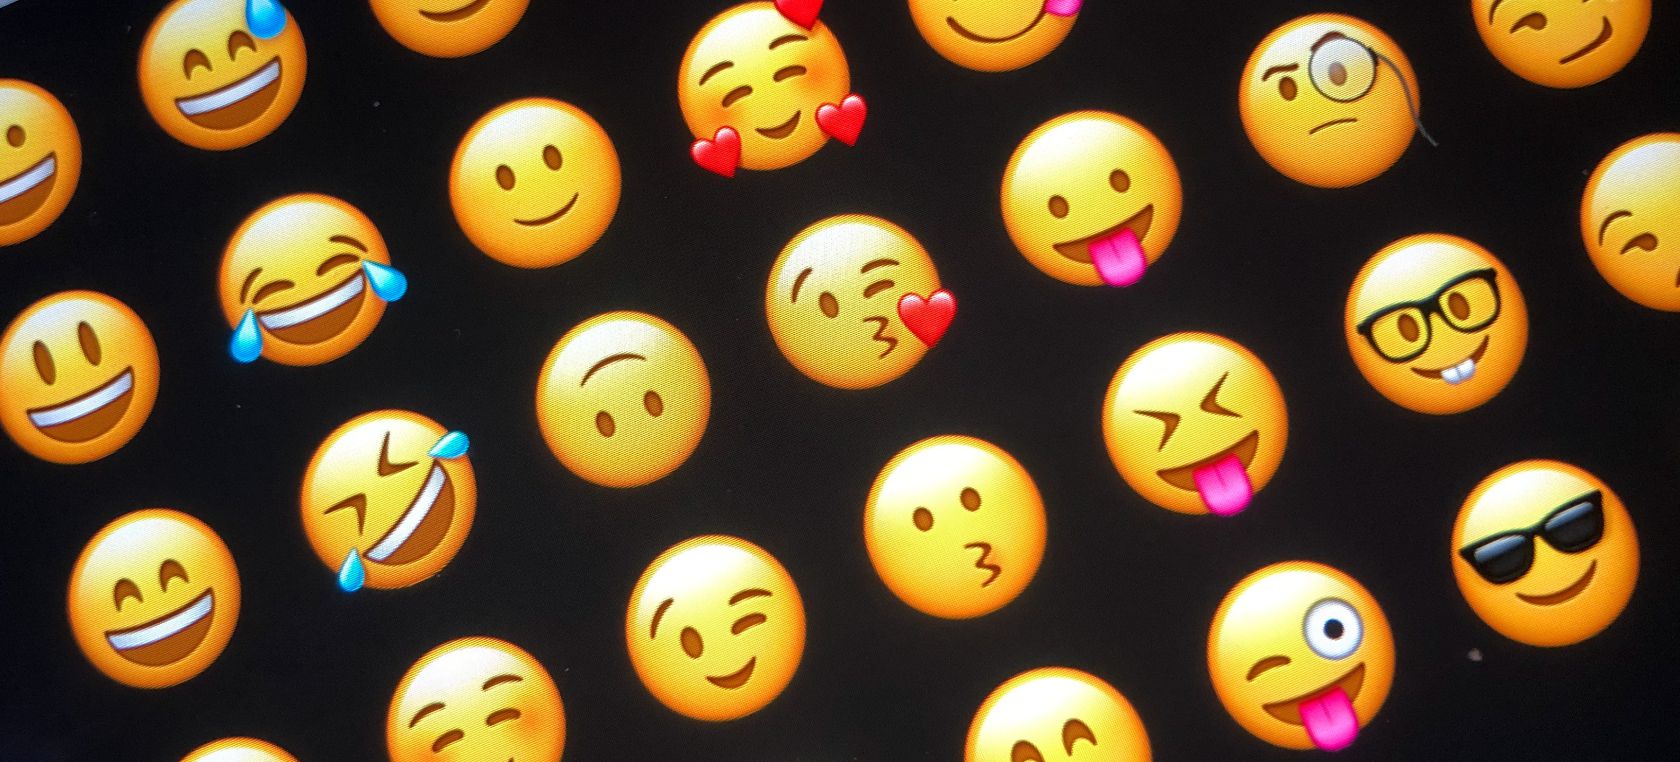 Día del Emoji: las canciones perfectas para combinar con los icónicos rostros amarillos